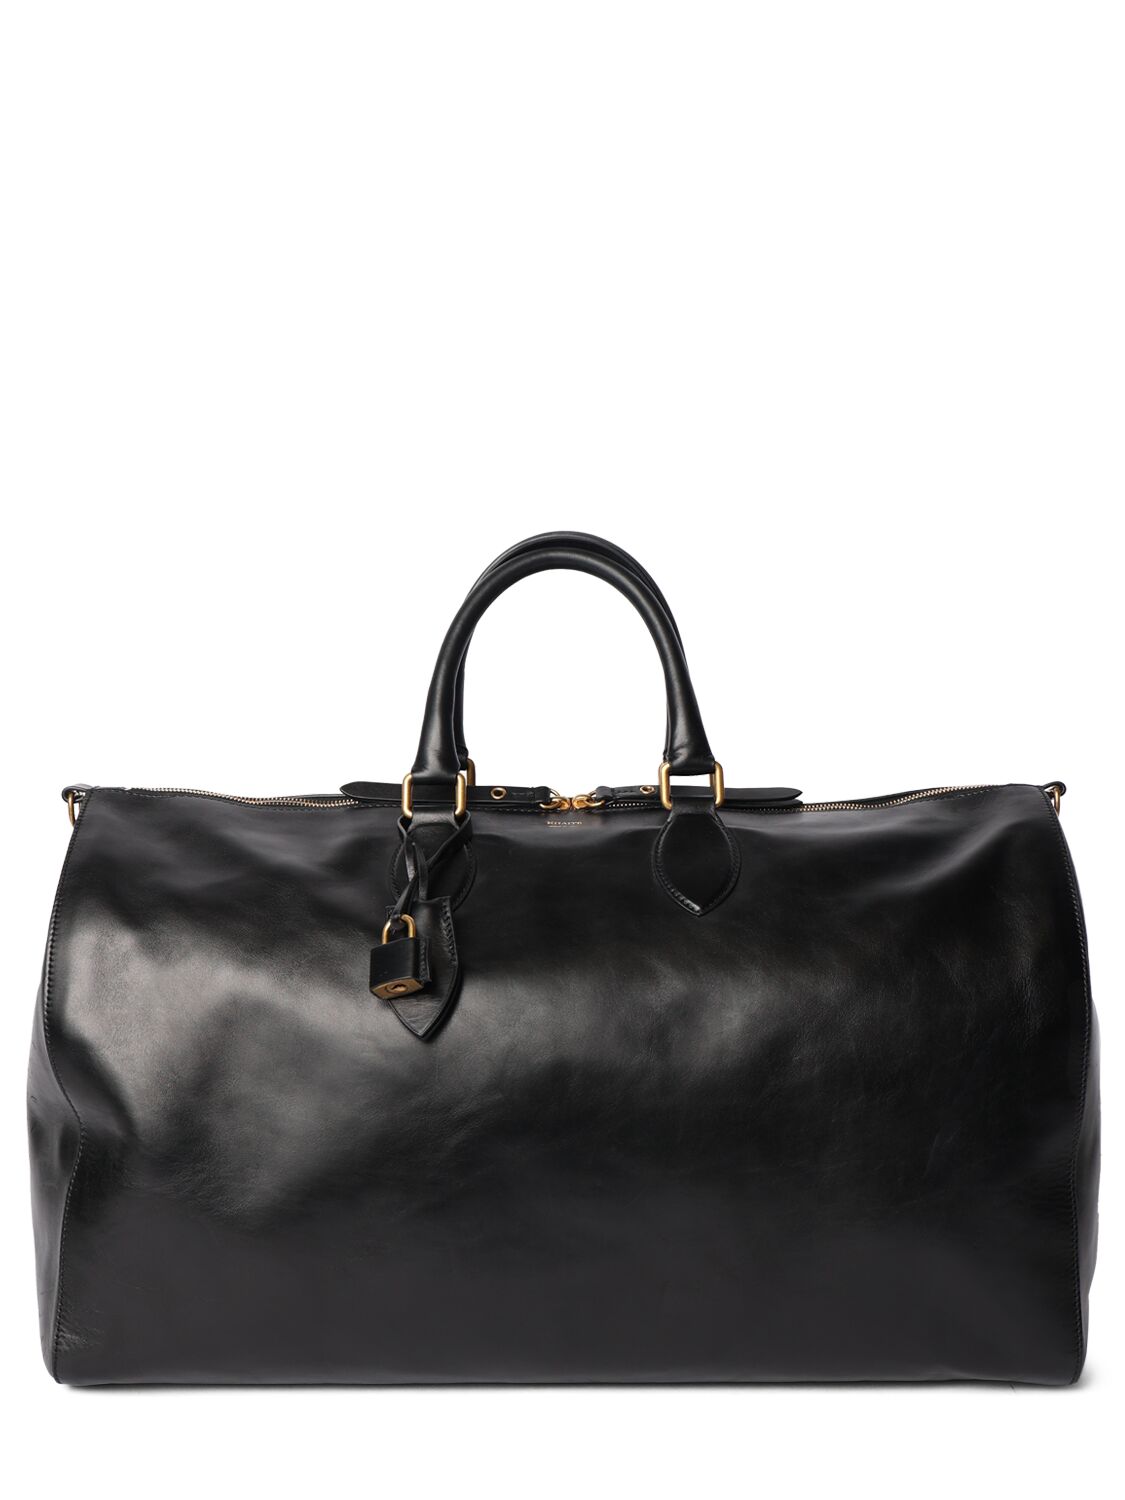 Khaite Pierre Leather Weekender Bag In Black